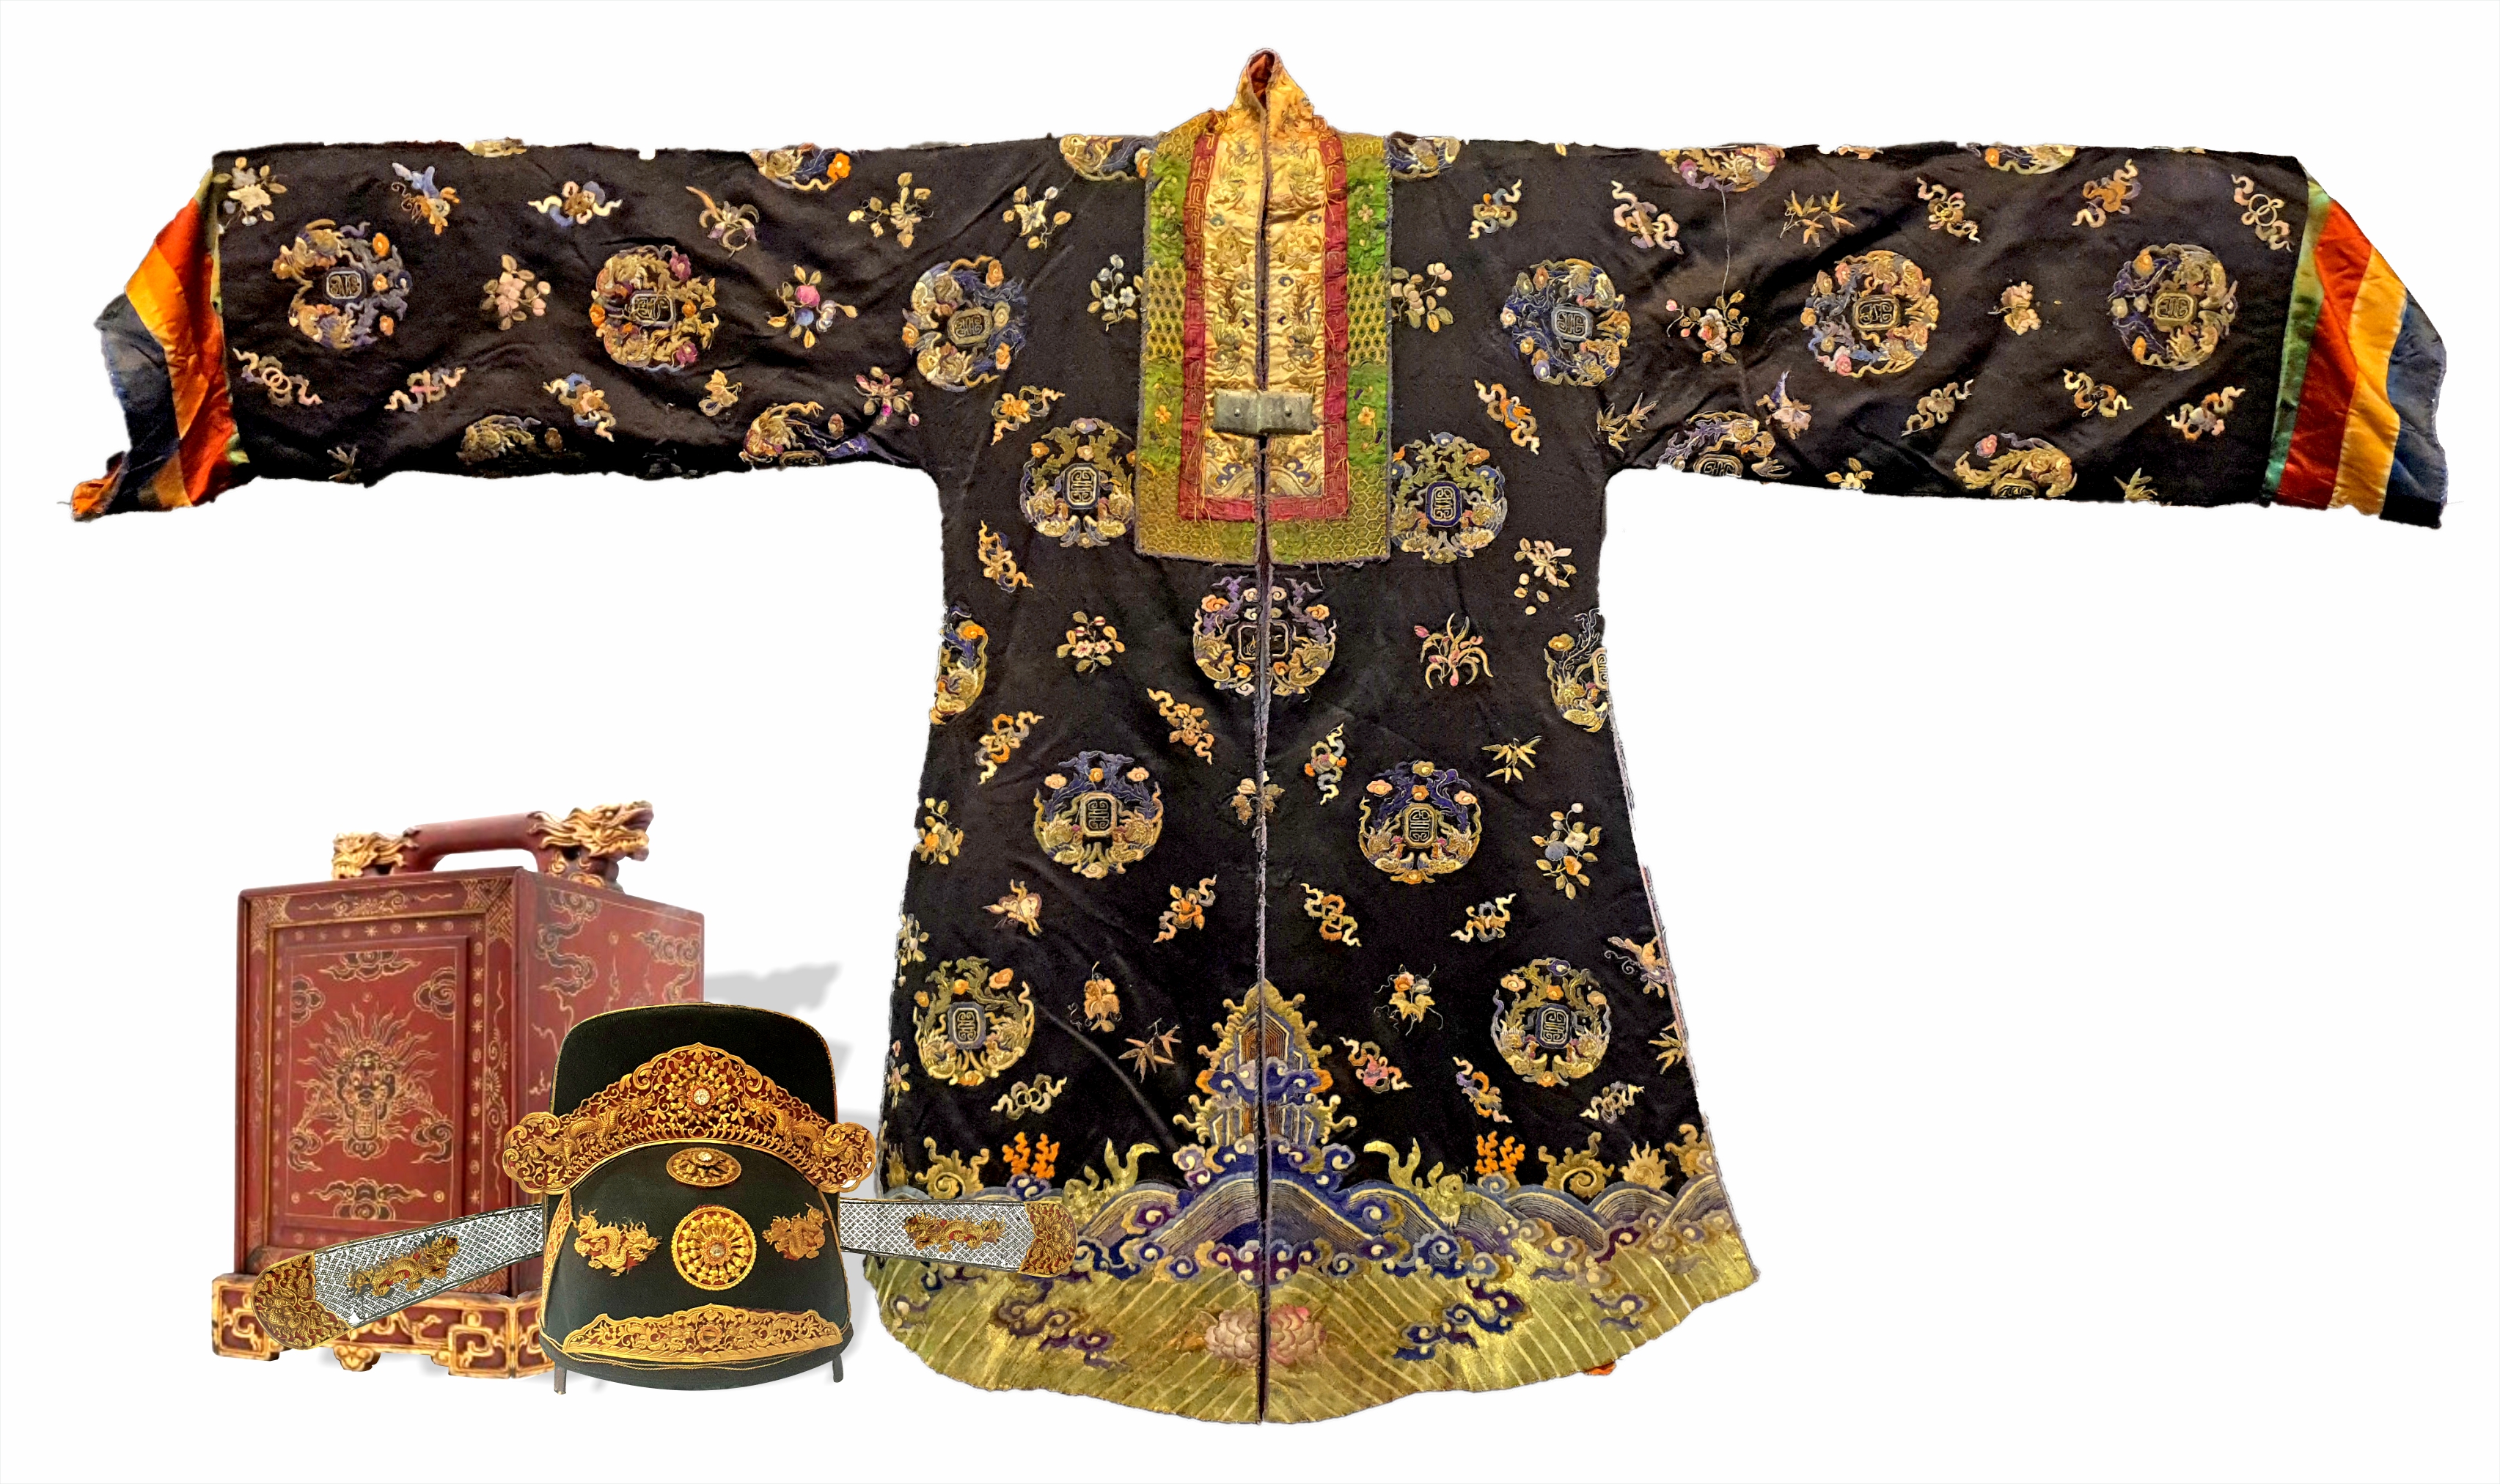 Lễ tiếp nhận cổ vật đấu giá thành công ở nước ngoài & thực hiện Trưng bày mũ quan đại thần và áo Nhật Bình cung tần triều Nguyễn